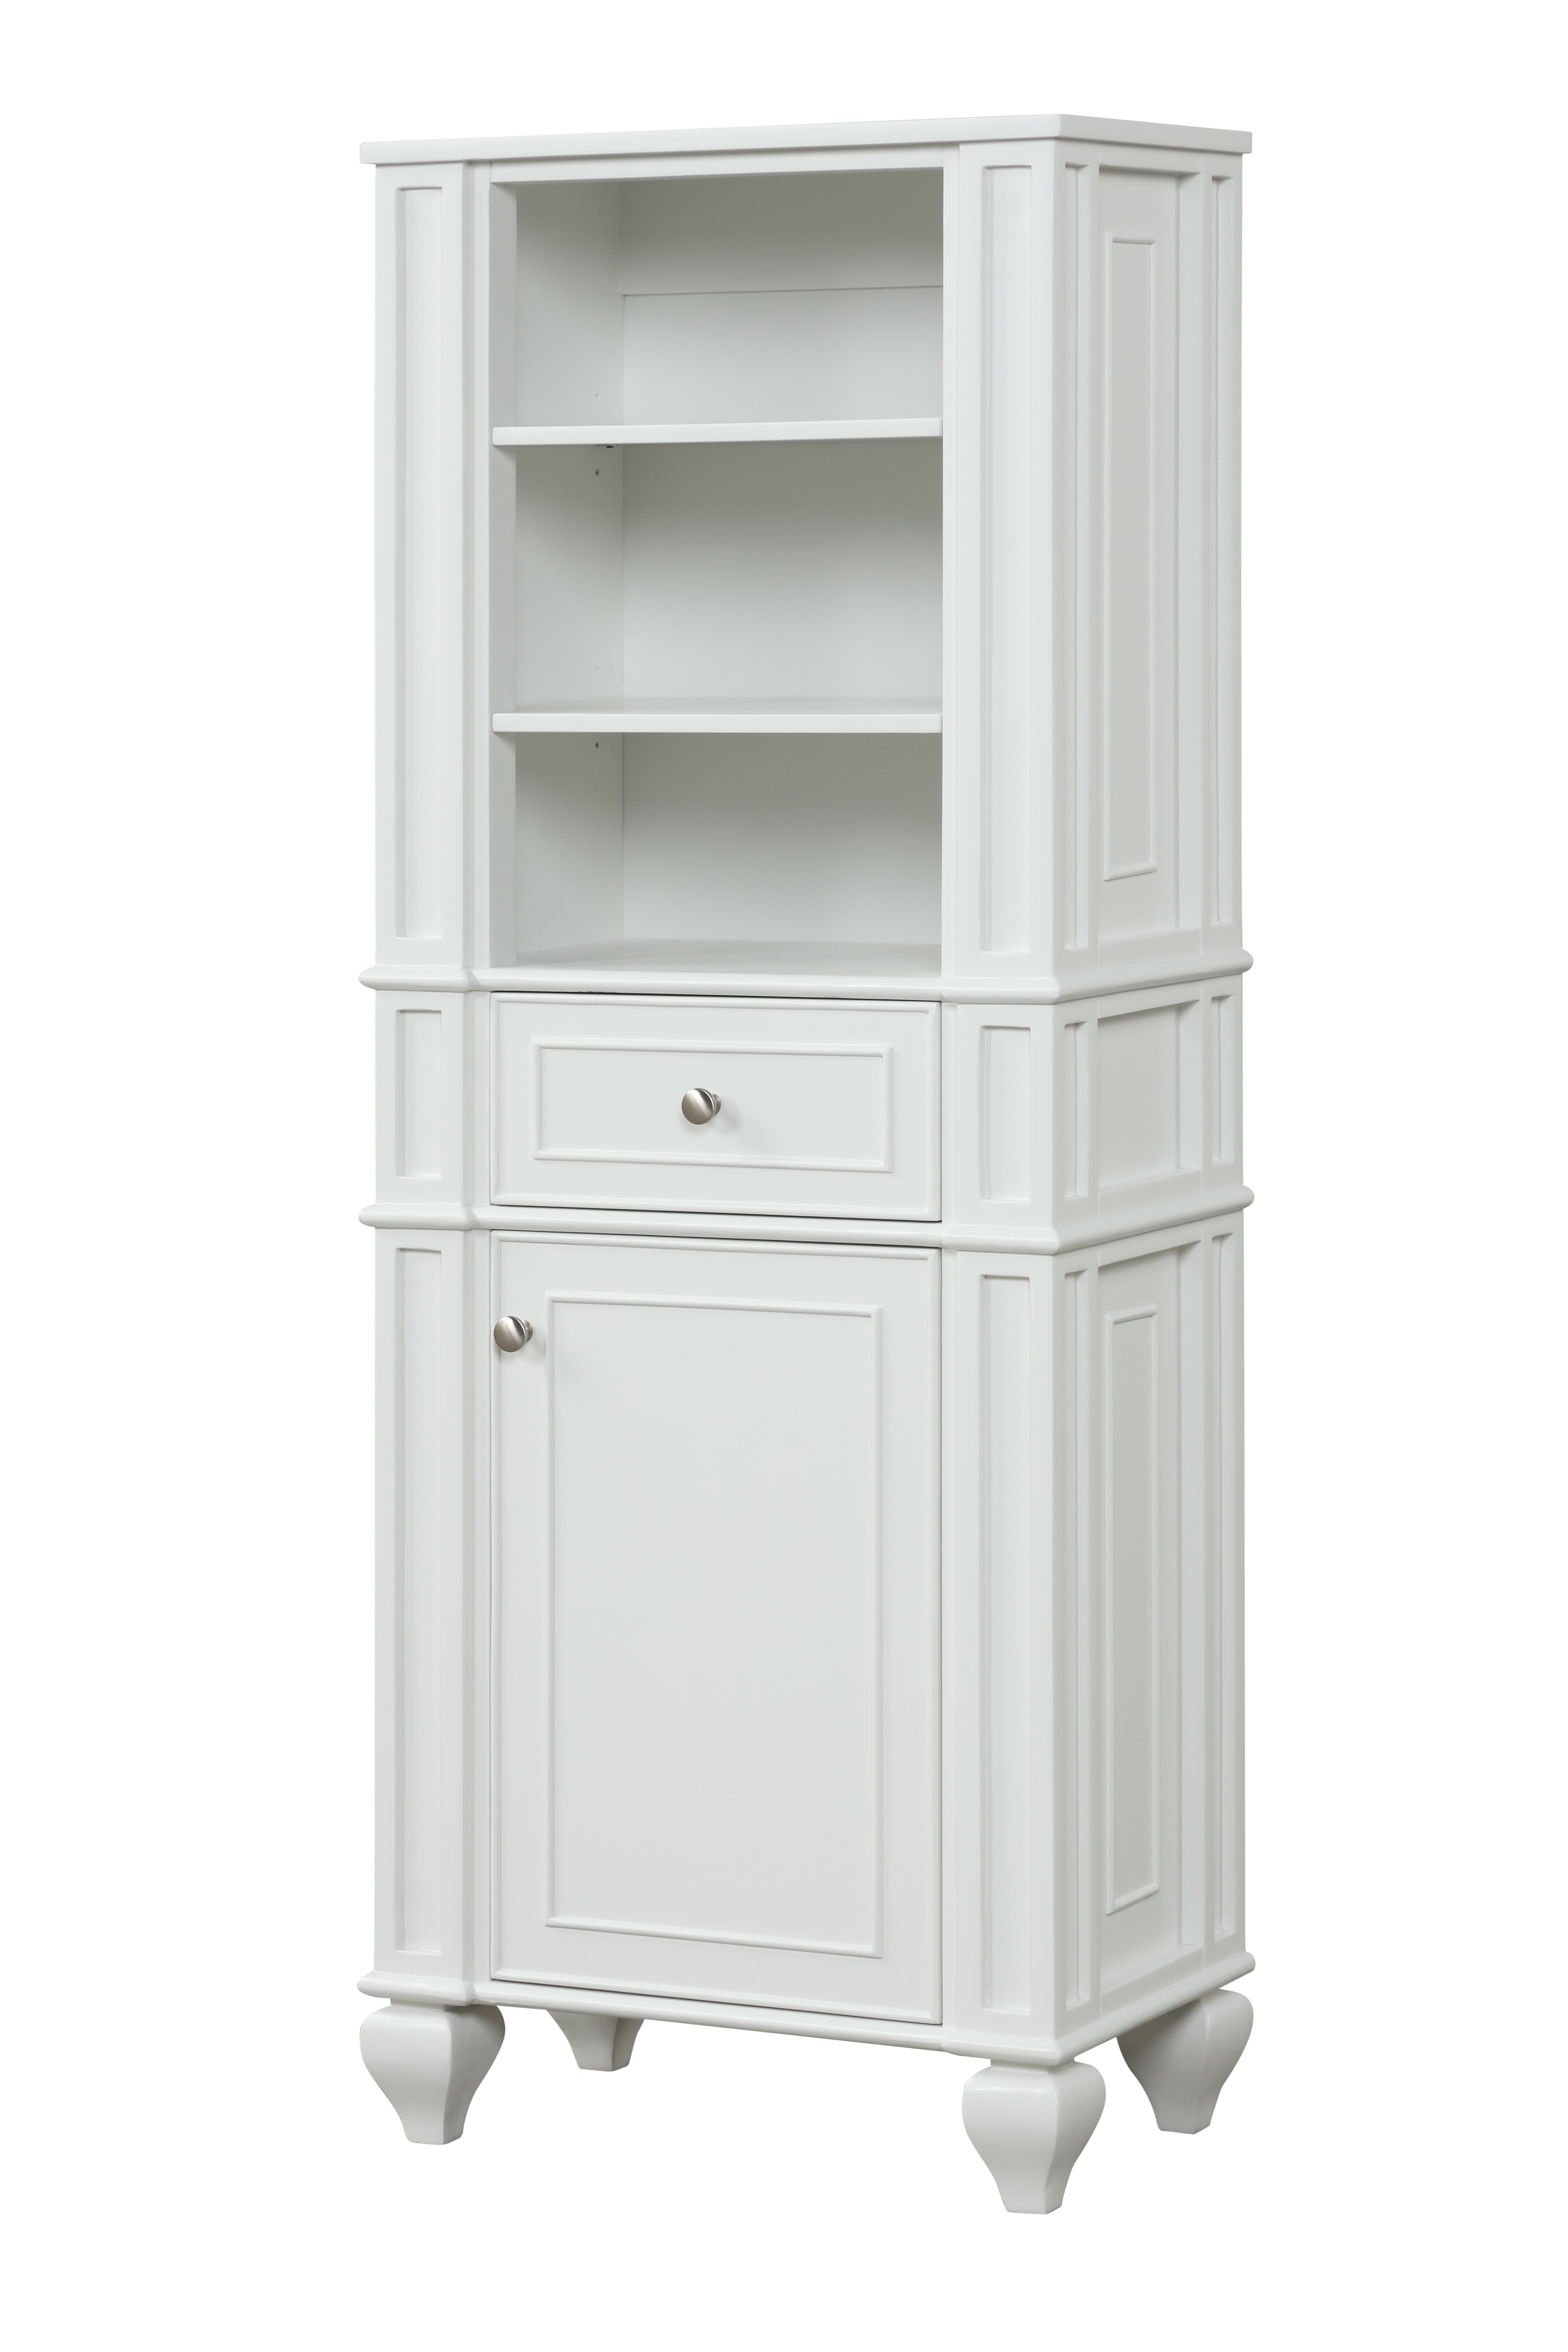 https://assets.wfcdn.com/im/16886846/compr-r85/2182/218299557/arbesa-solid-wood-freestanding-linen-cabinet.jpg